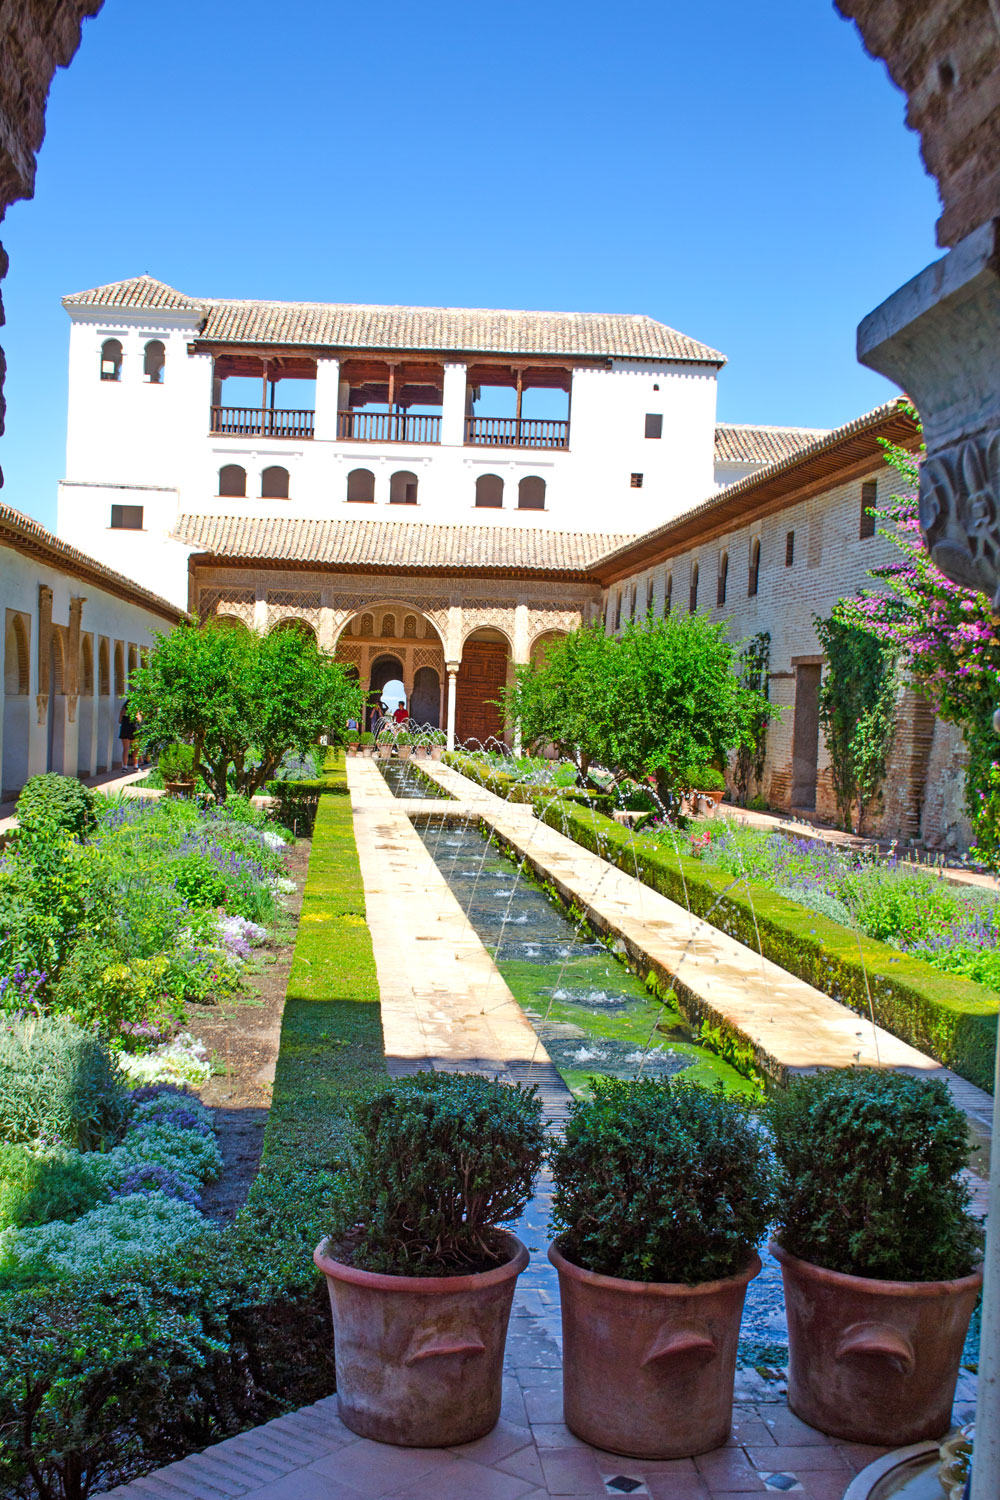 [unbezahlte werbung]La Alhambra - Was man für einen Besuch wissen muss | Die Palast-Gärten